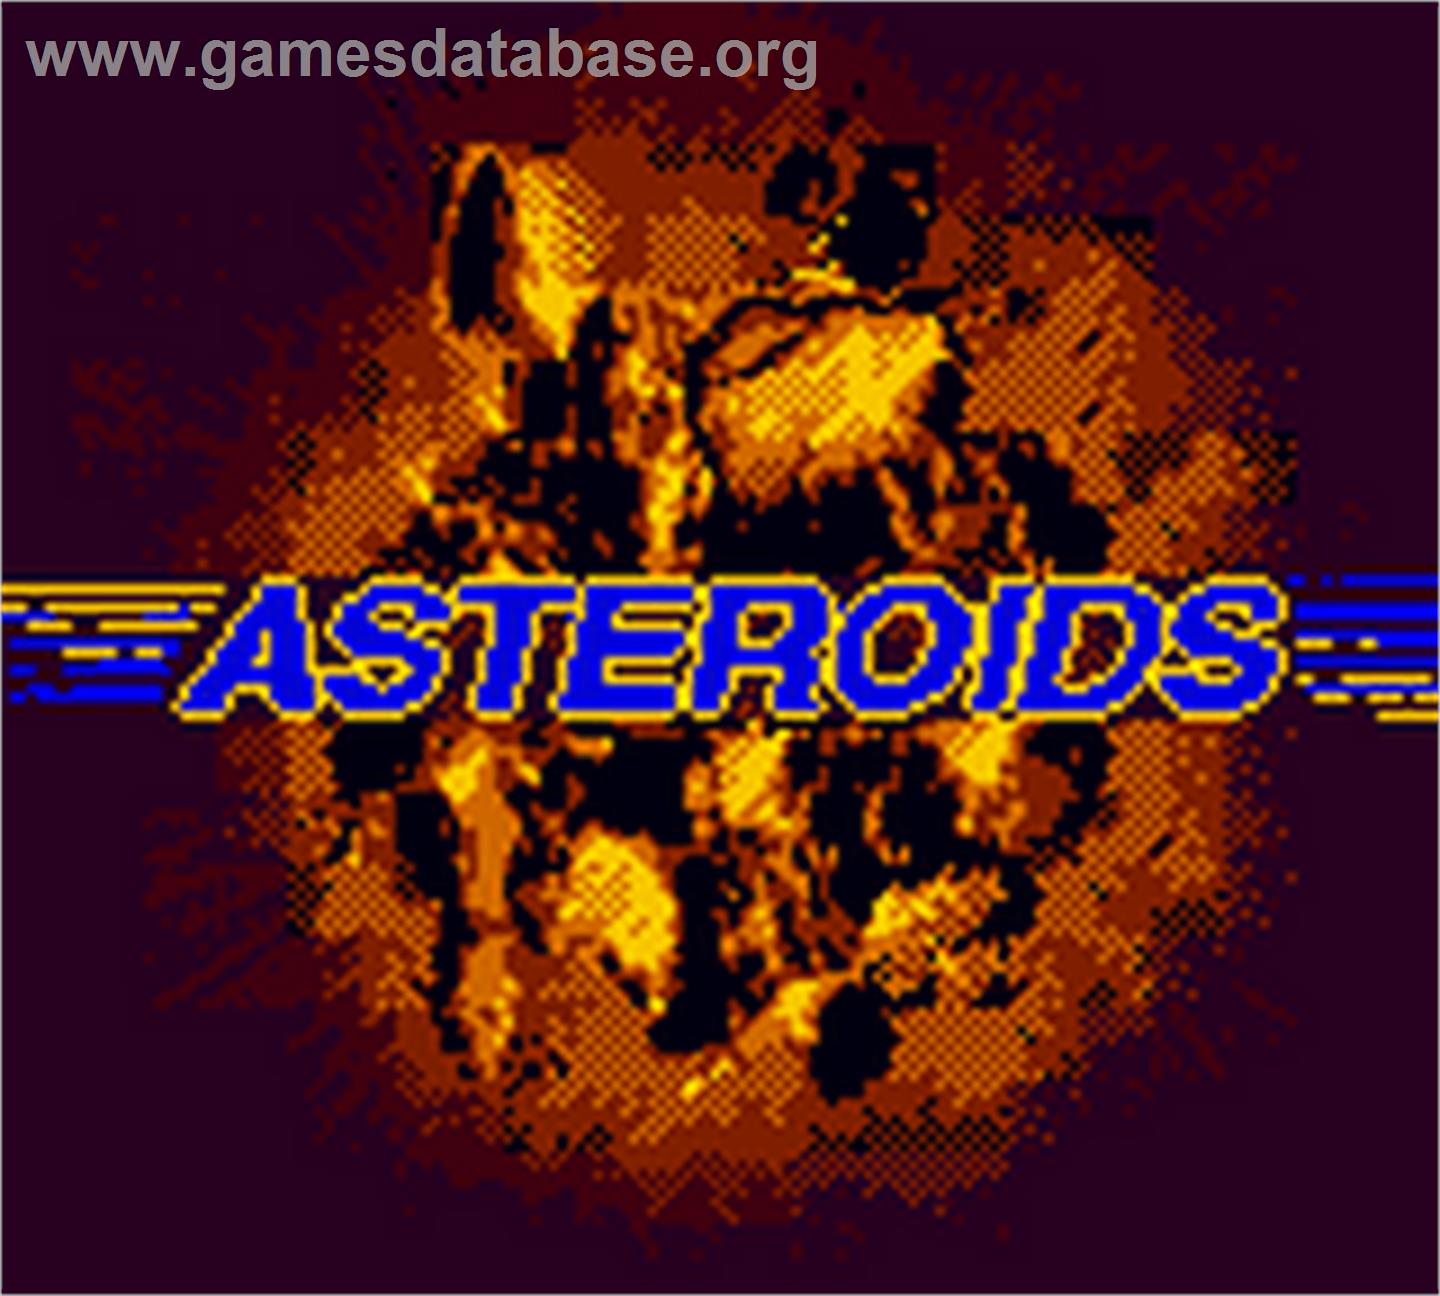 Asteroids - Nintendo Game Boy Color - Artwork - Title Screen